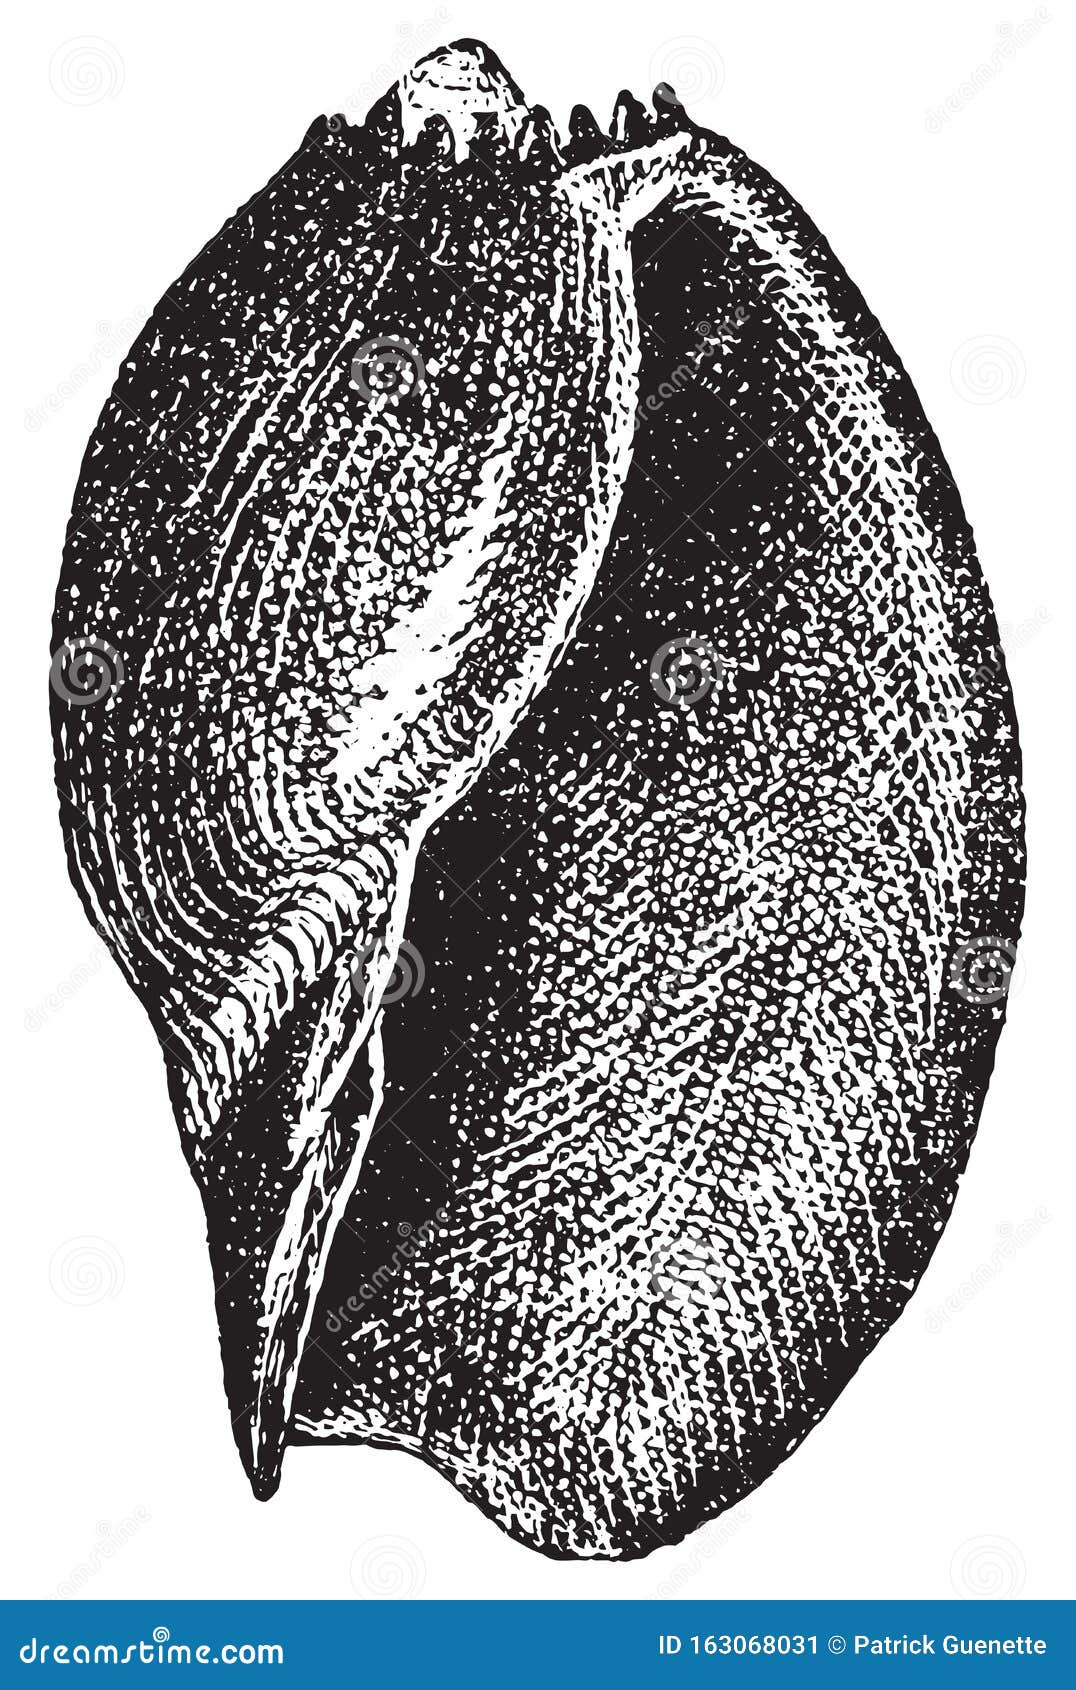 volute or voluta aethiopica, vintage engraving